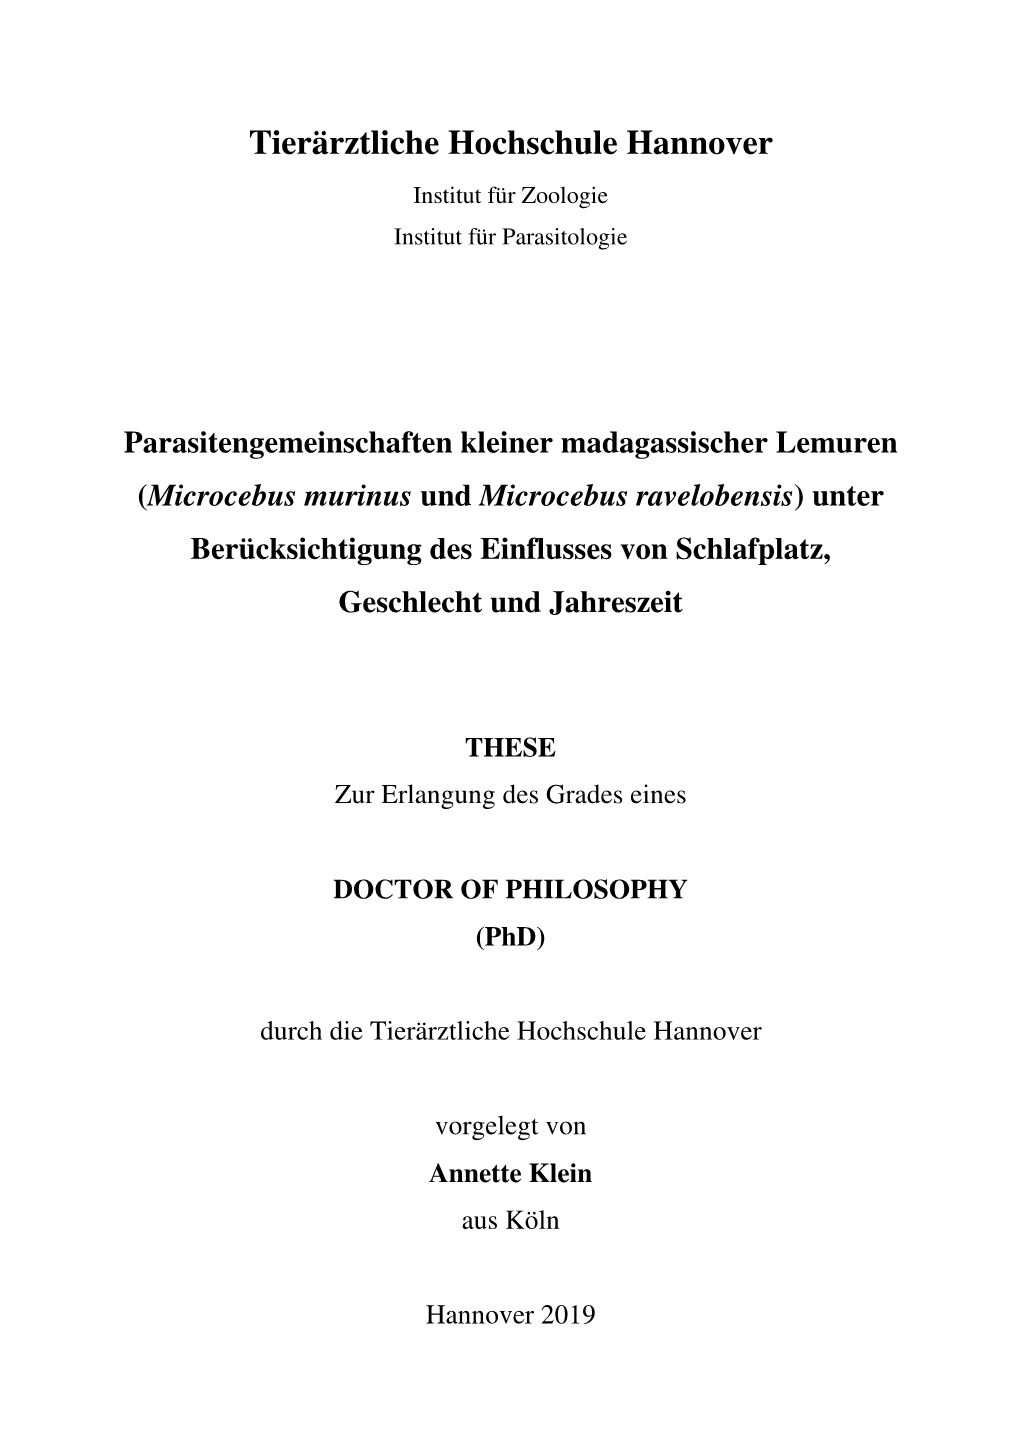 Dissertation Klein Druckversion